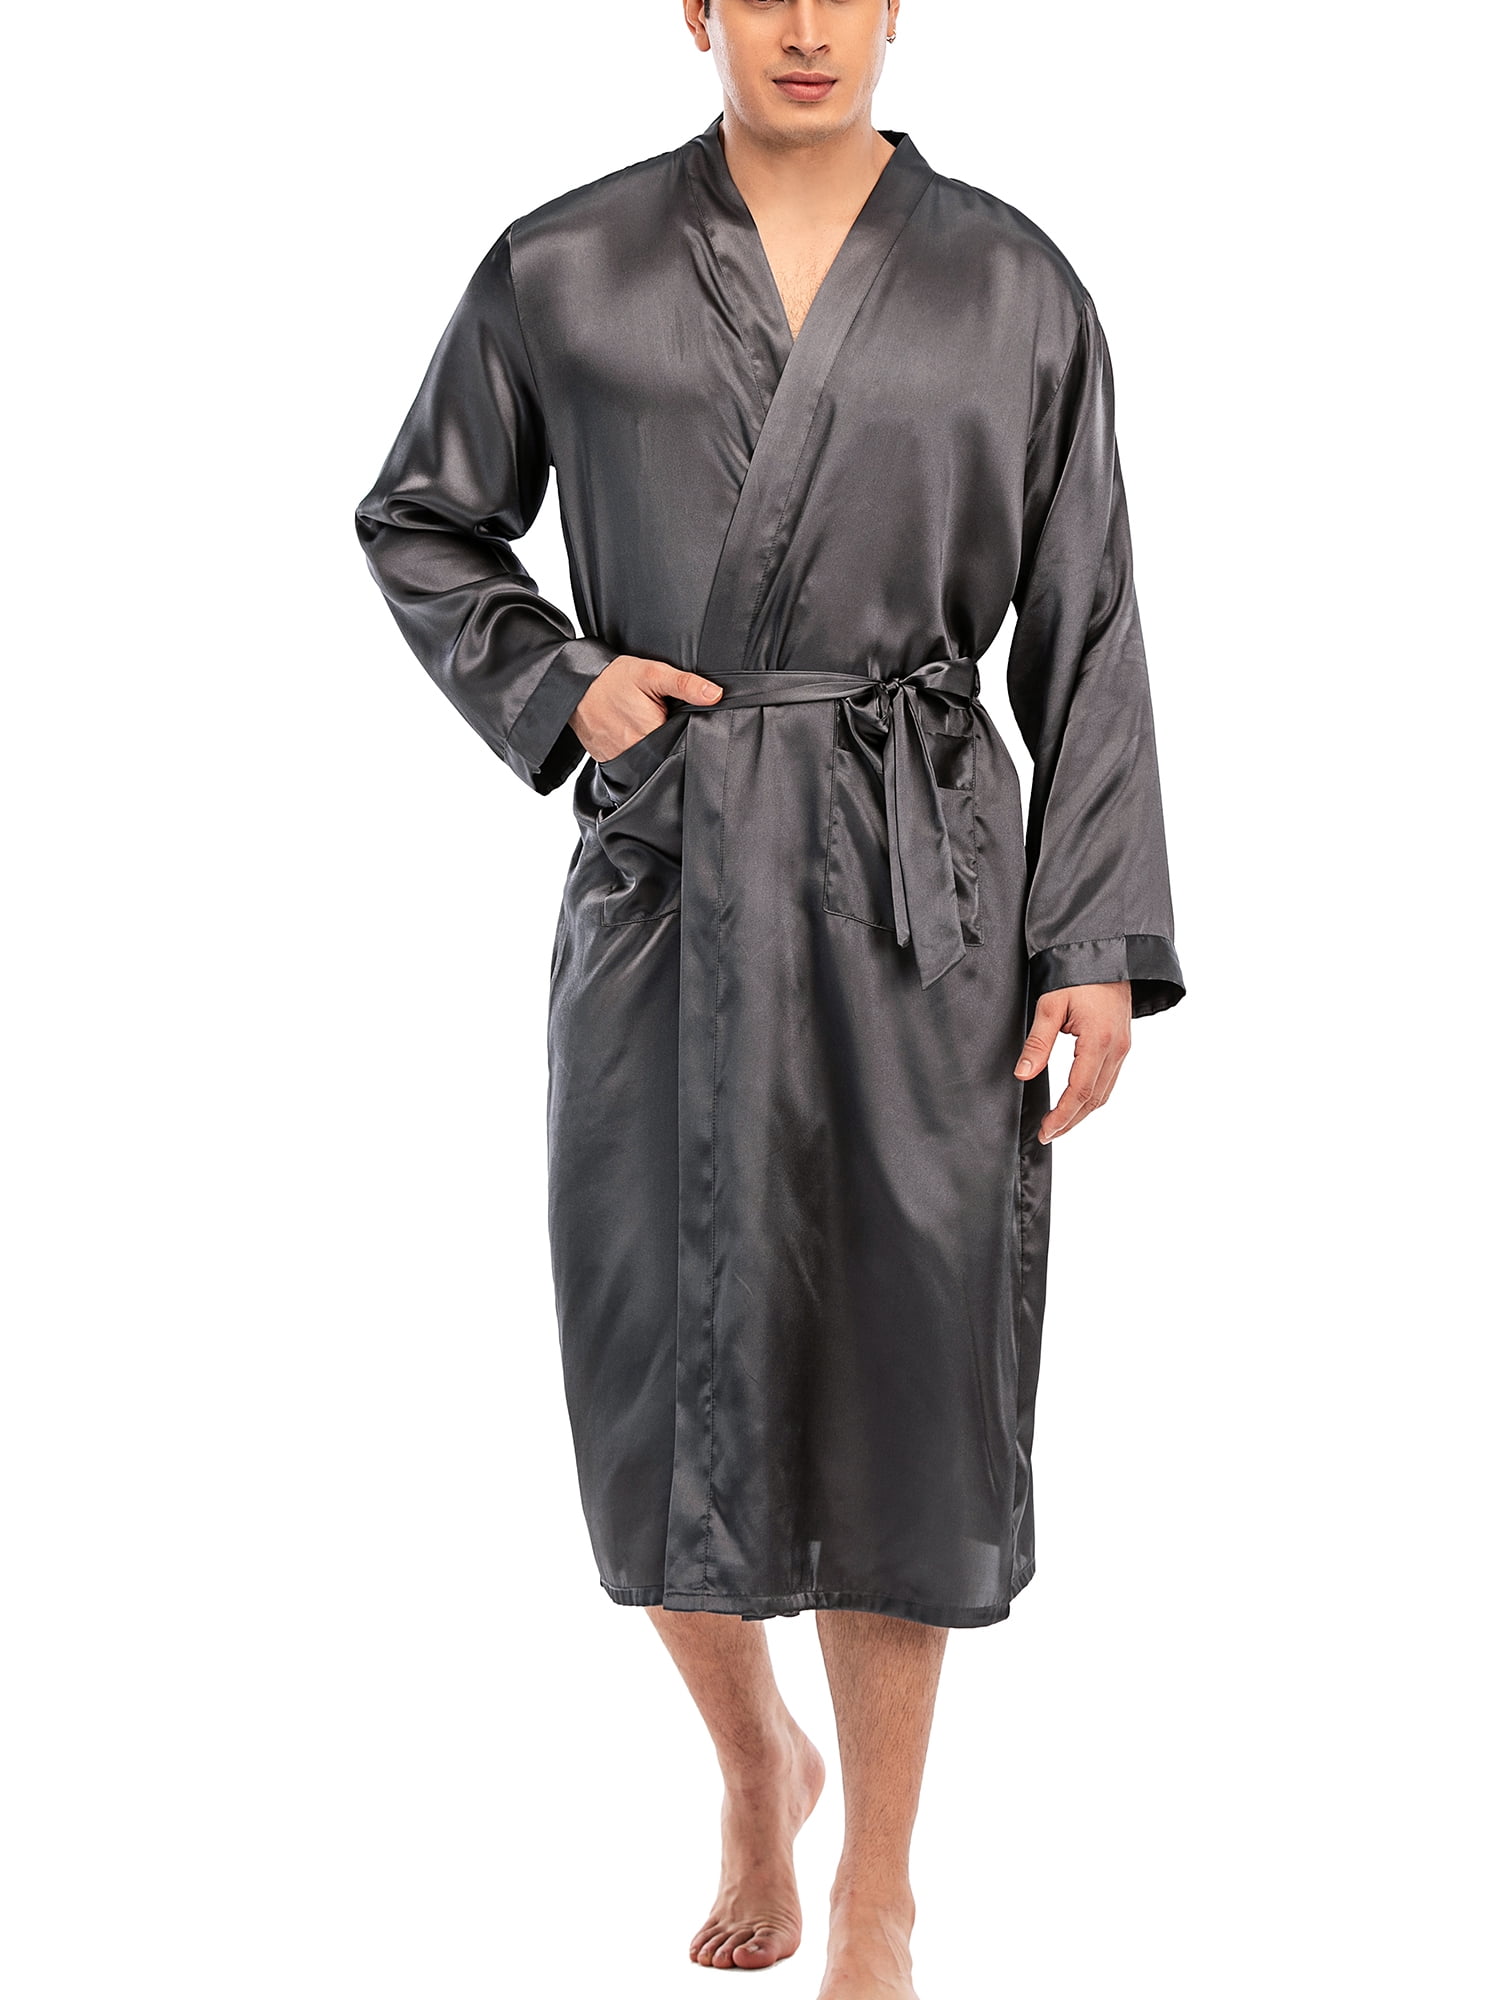 Men's Satin Robe with Shorts Silk Bath Robe Luxurious Kimono Nightgown Pajamas Bathrobes 